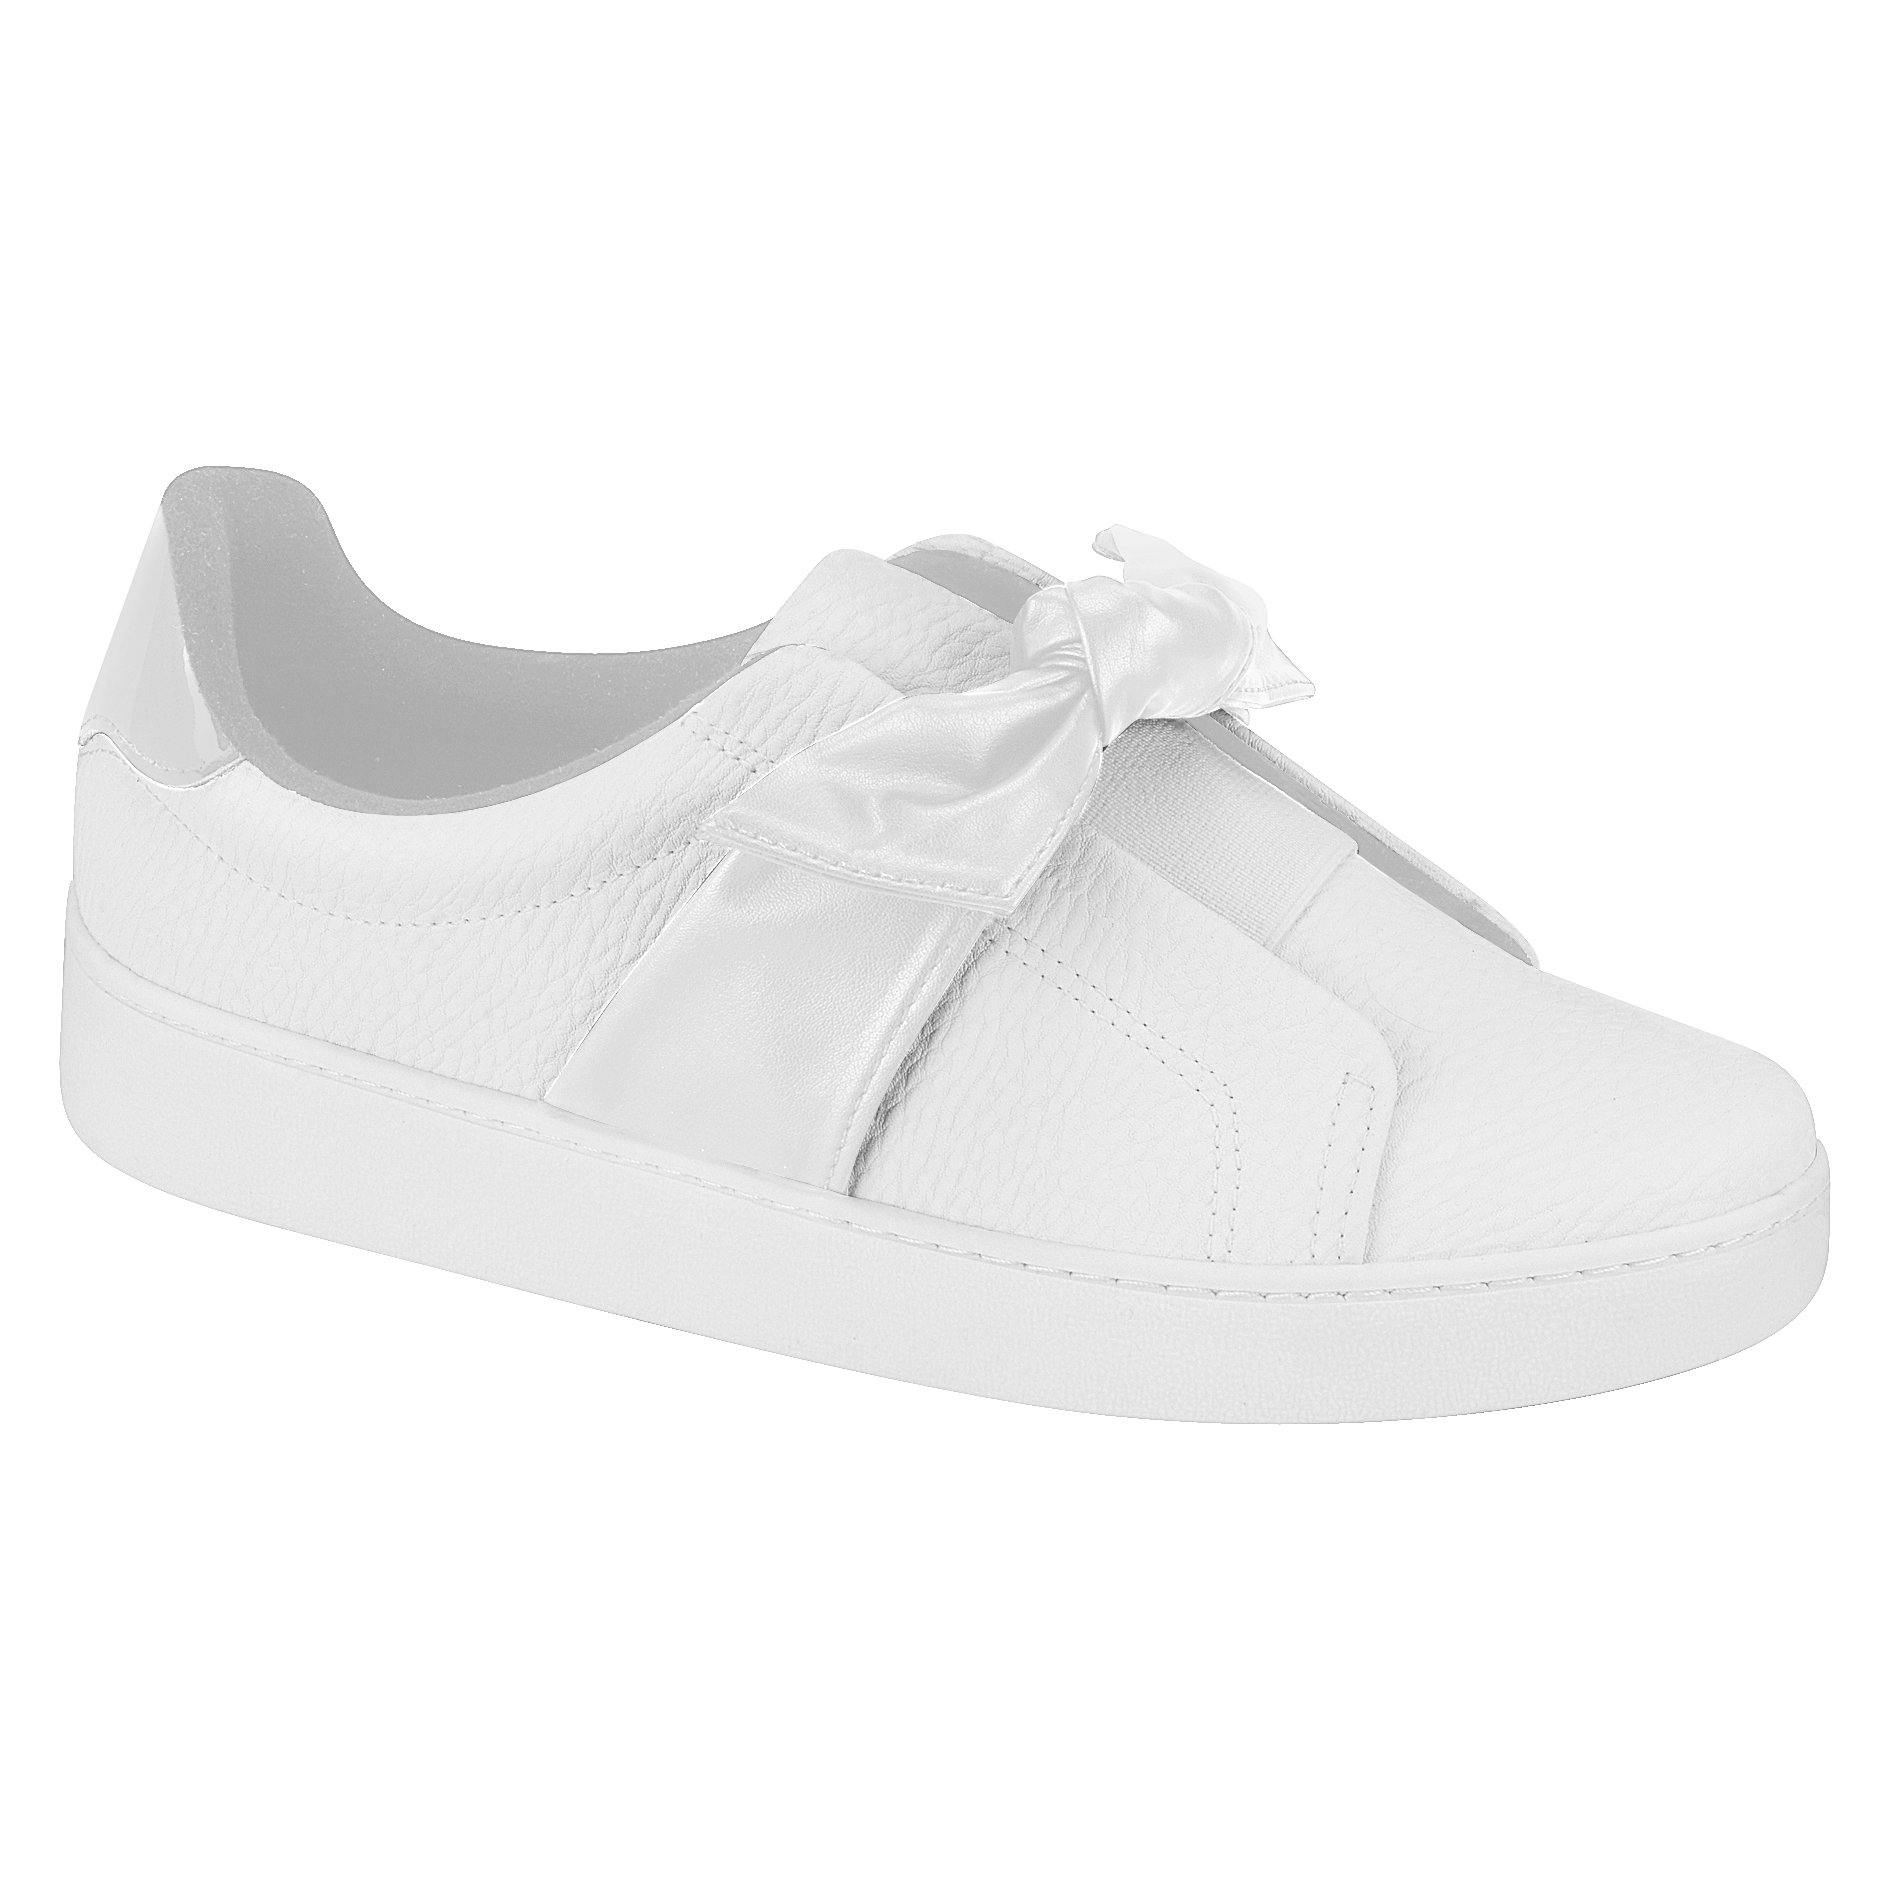 Vizzano 1214-298 Bowtie Sneaker in White Napa - Charley Boutique